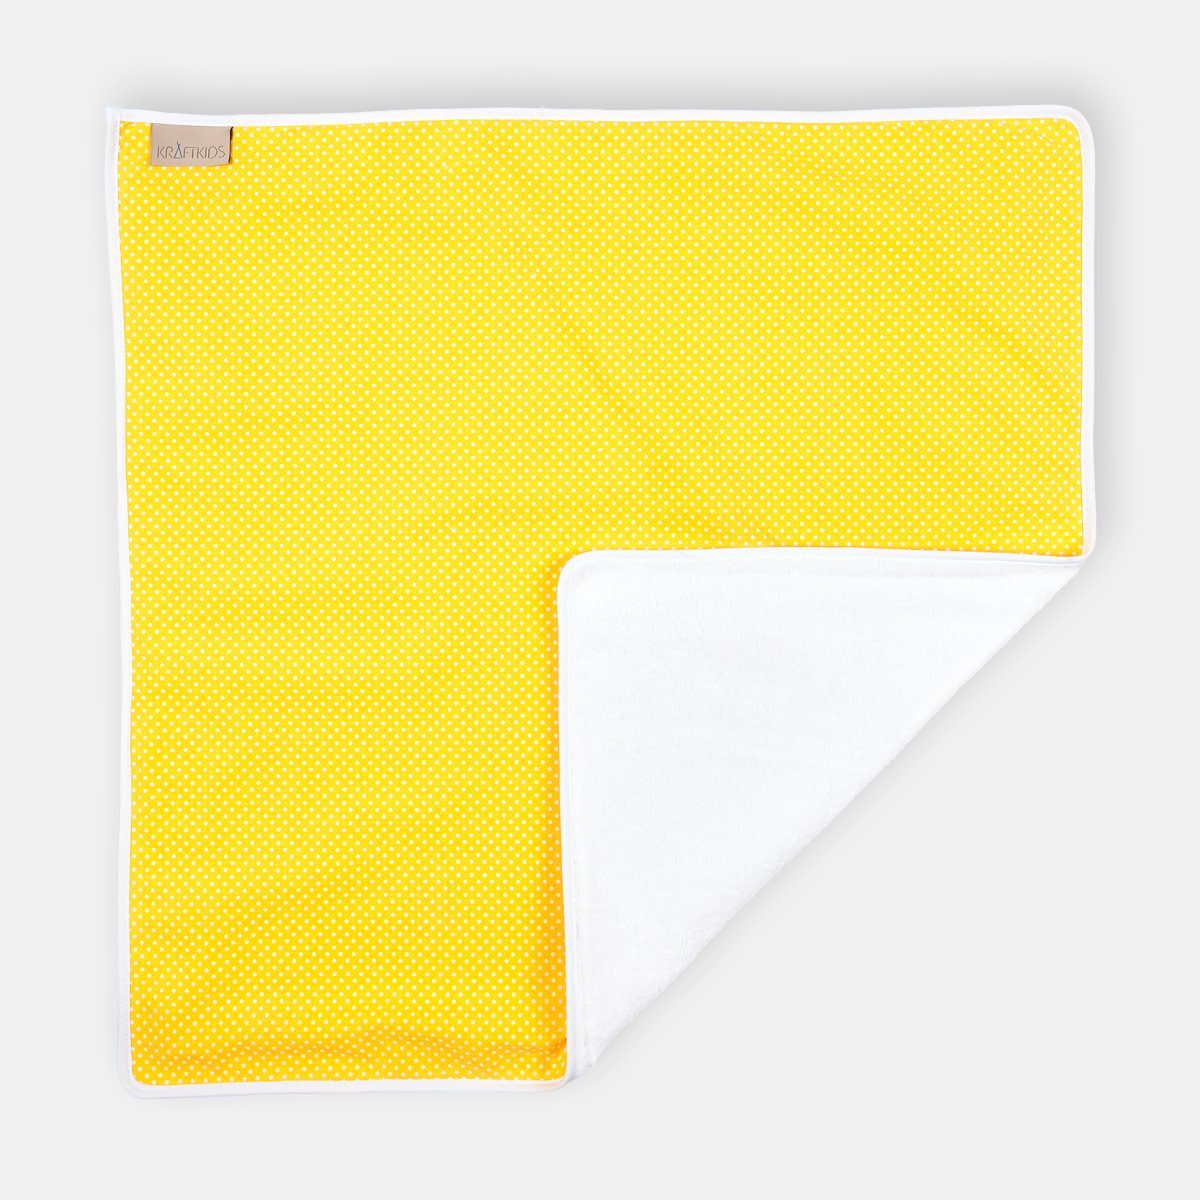 KraftKids Wickelauflage weiße Punkte auf Gelb, Wickelunterlage aus 3 Stoffsichten 100% Baumwolle, Innen wasserundurchlässig, faltbar auch für Unterwegs